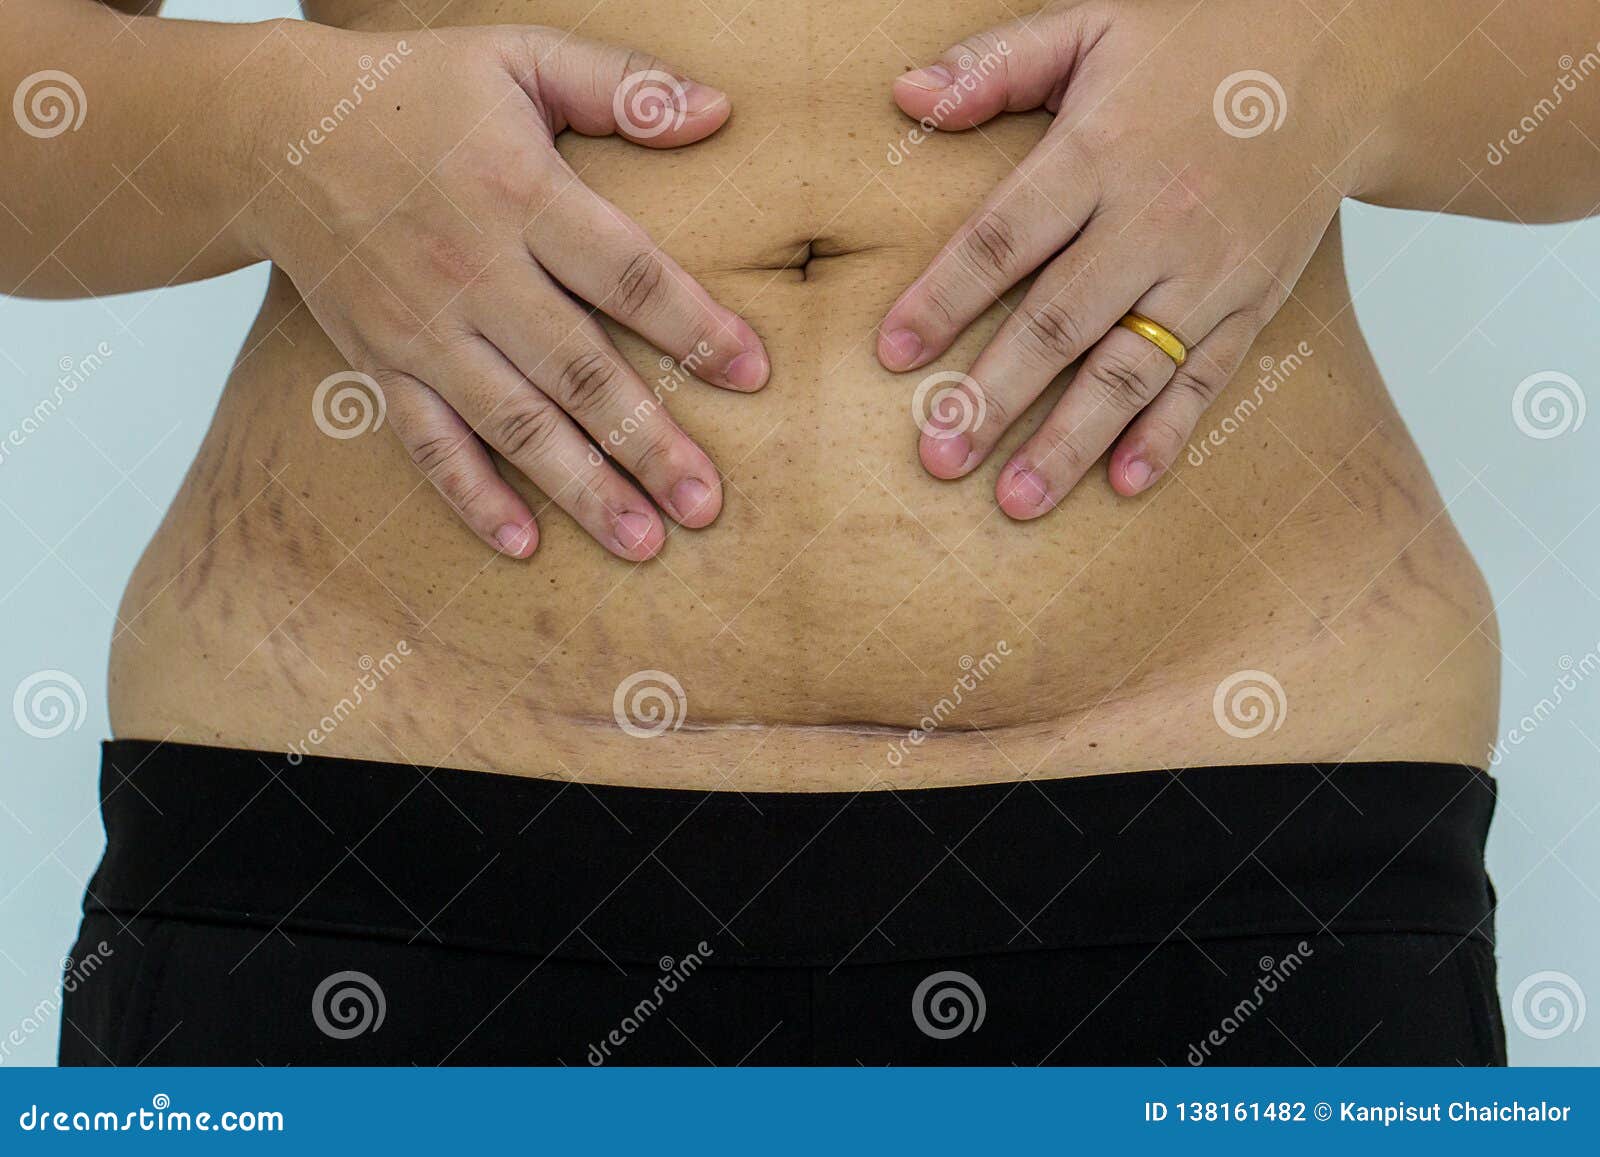 slim and fit figure after the longitudinal caesarean section. scar after a caesarean section, bikini line.